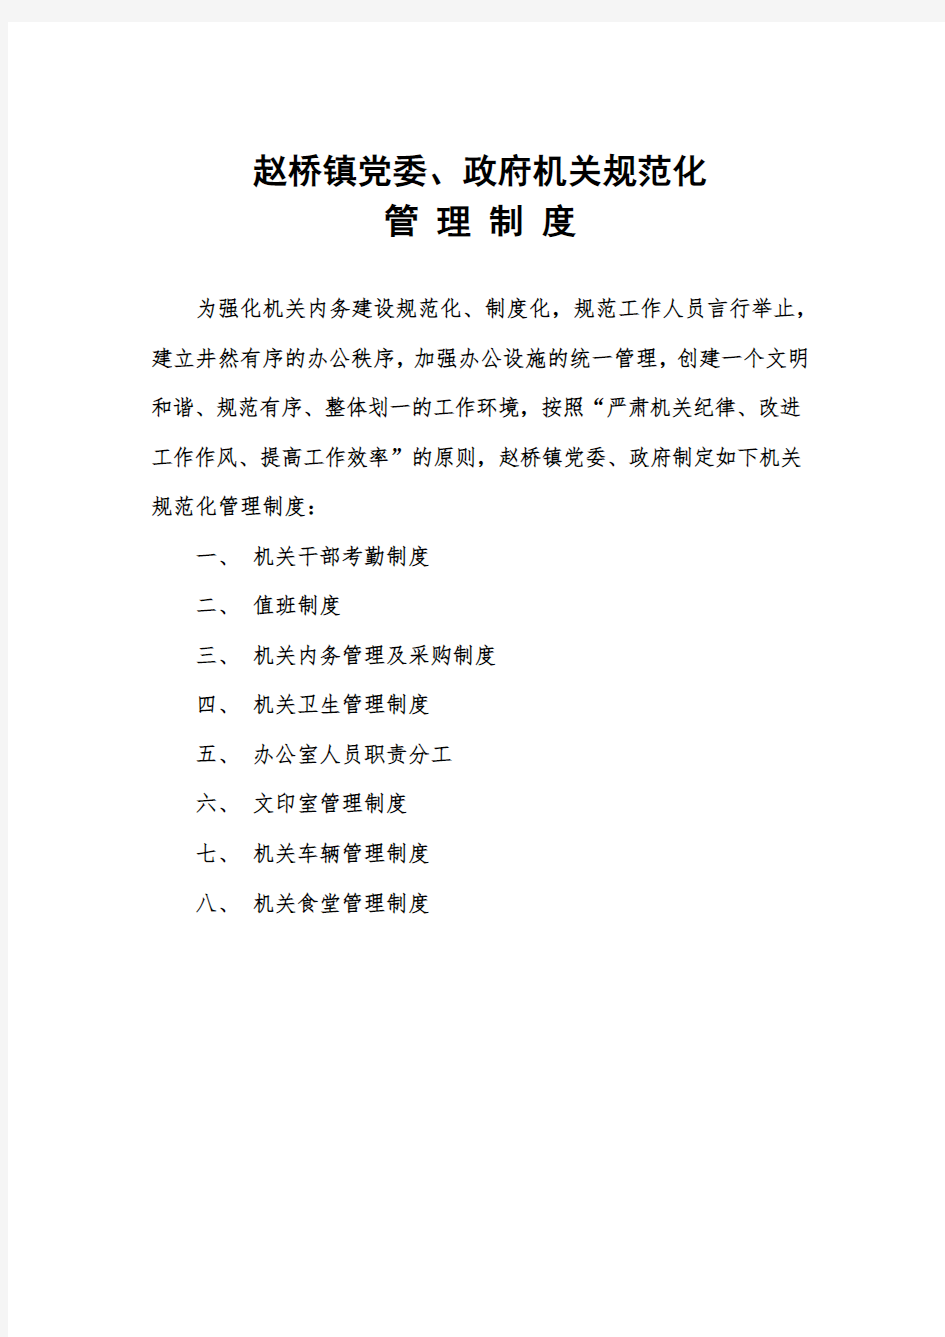 赵桥镇党委、政府机关规范化管理制度.